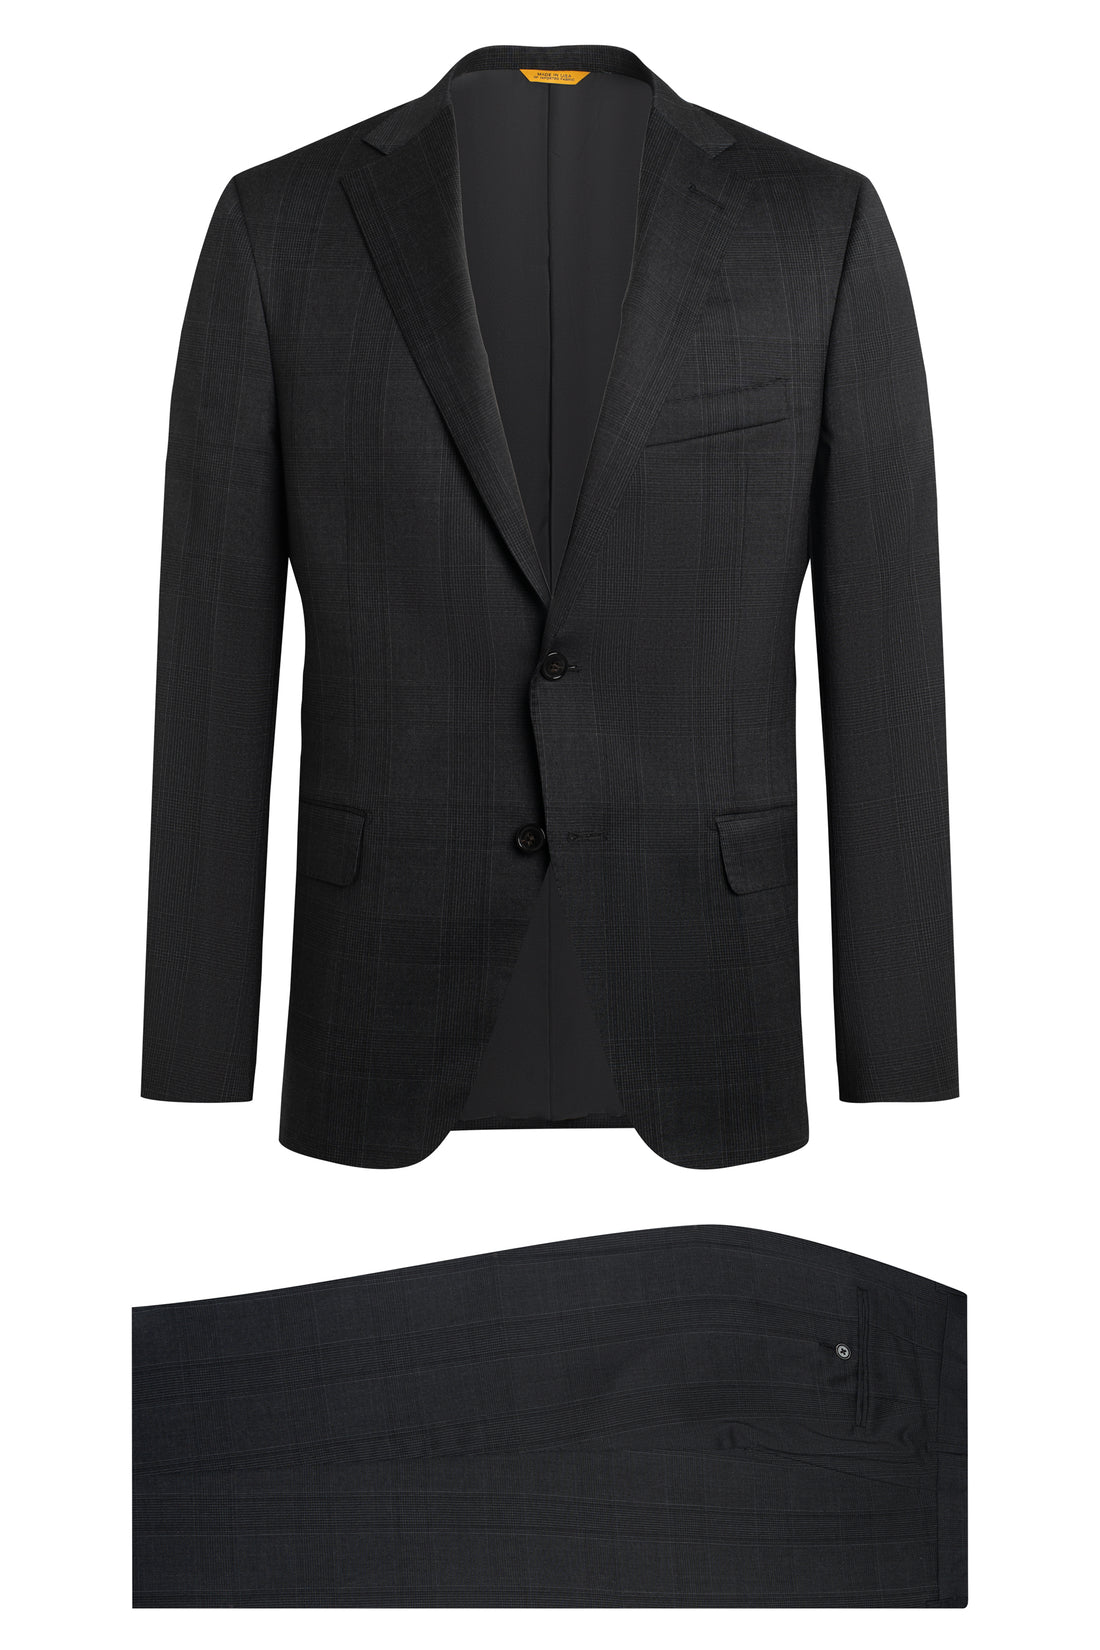 Charcoal Plaid Suit